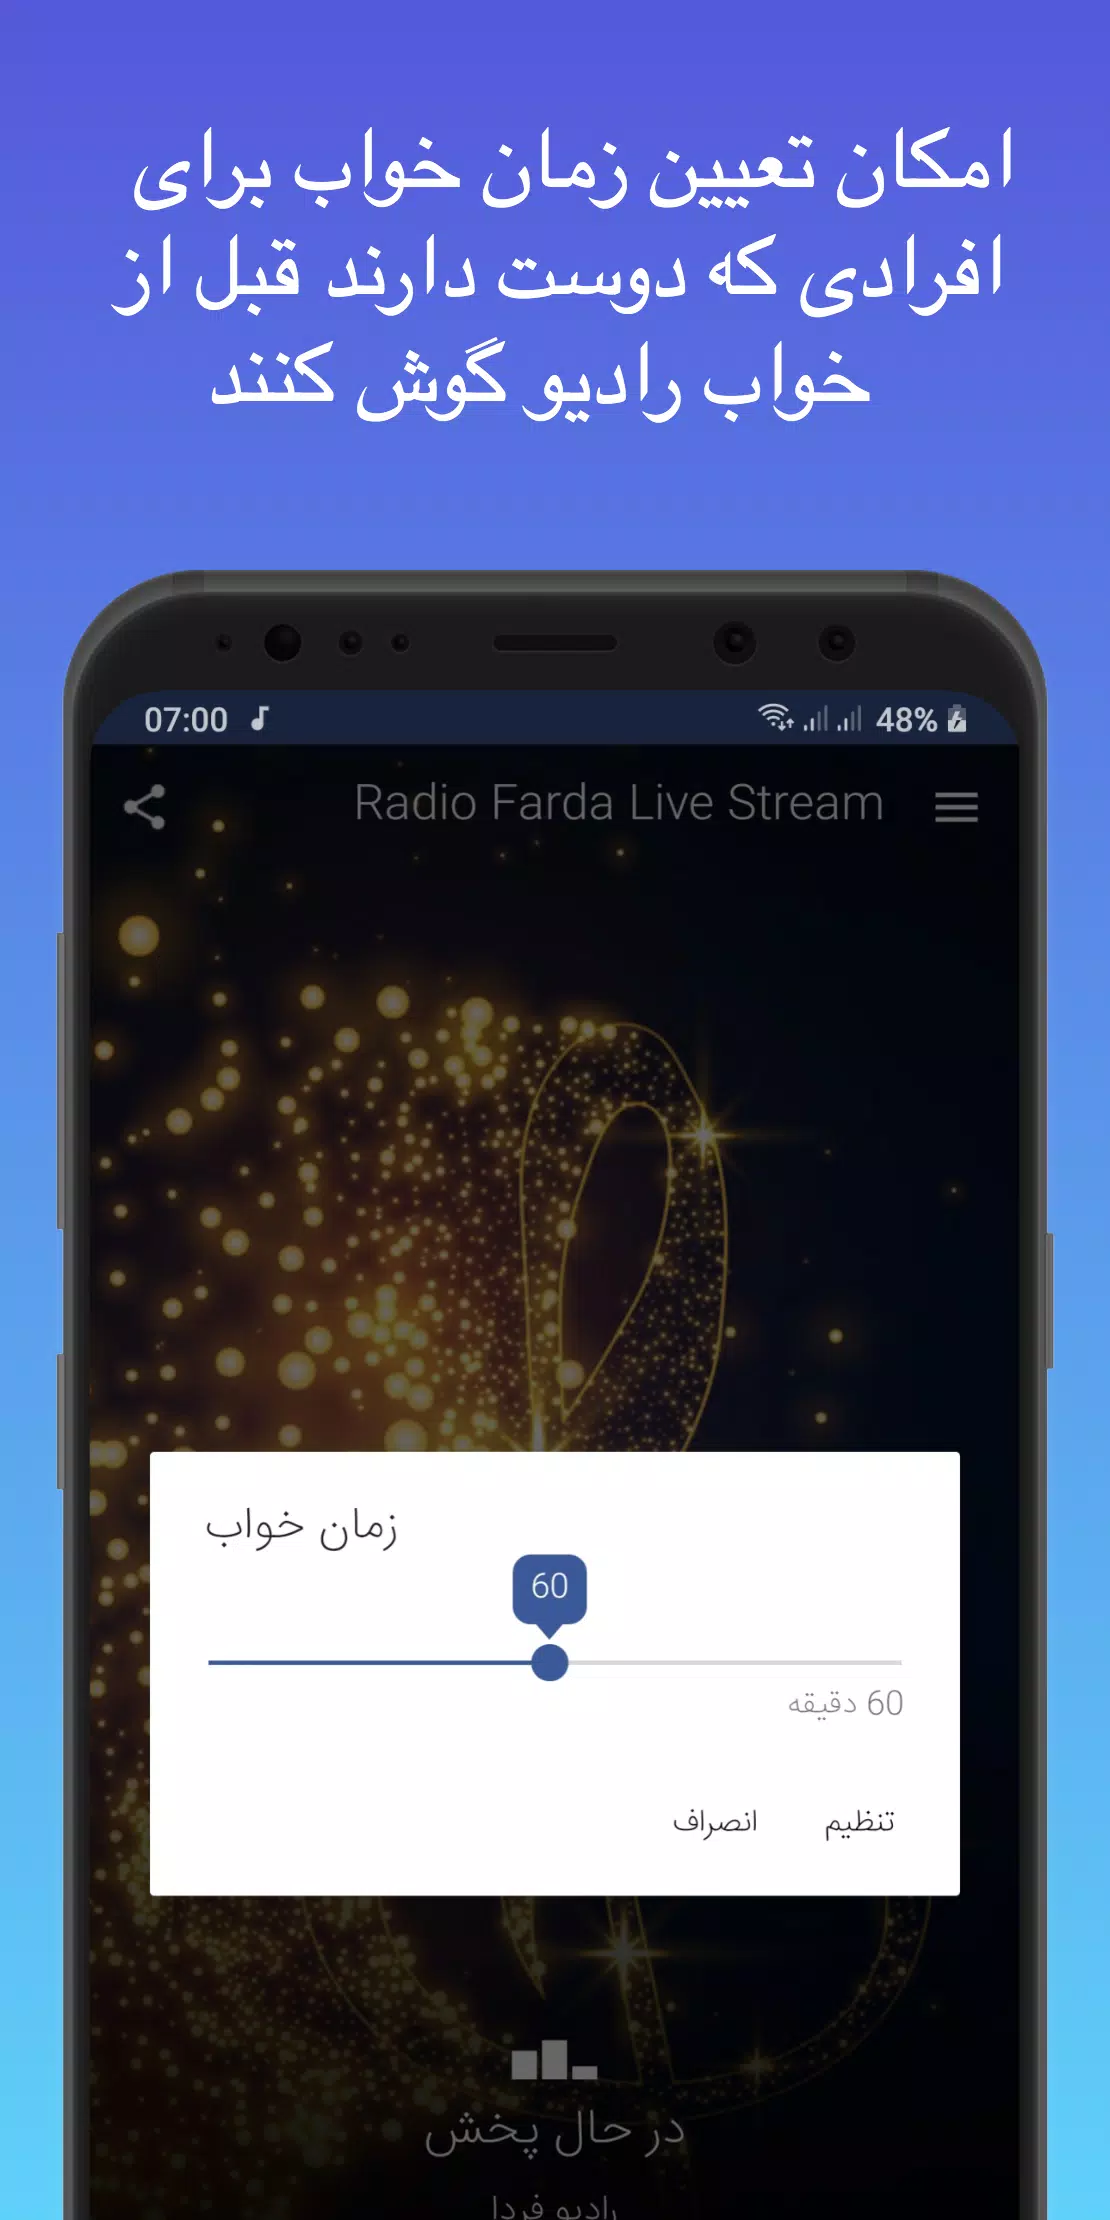 رادیو فردا پخش زنده - Radio Farda Live Stream‎ for Android - APK Download